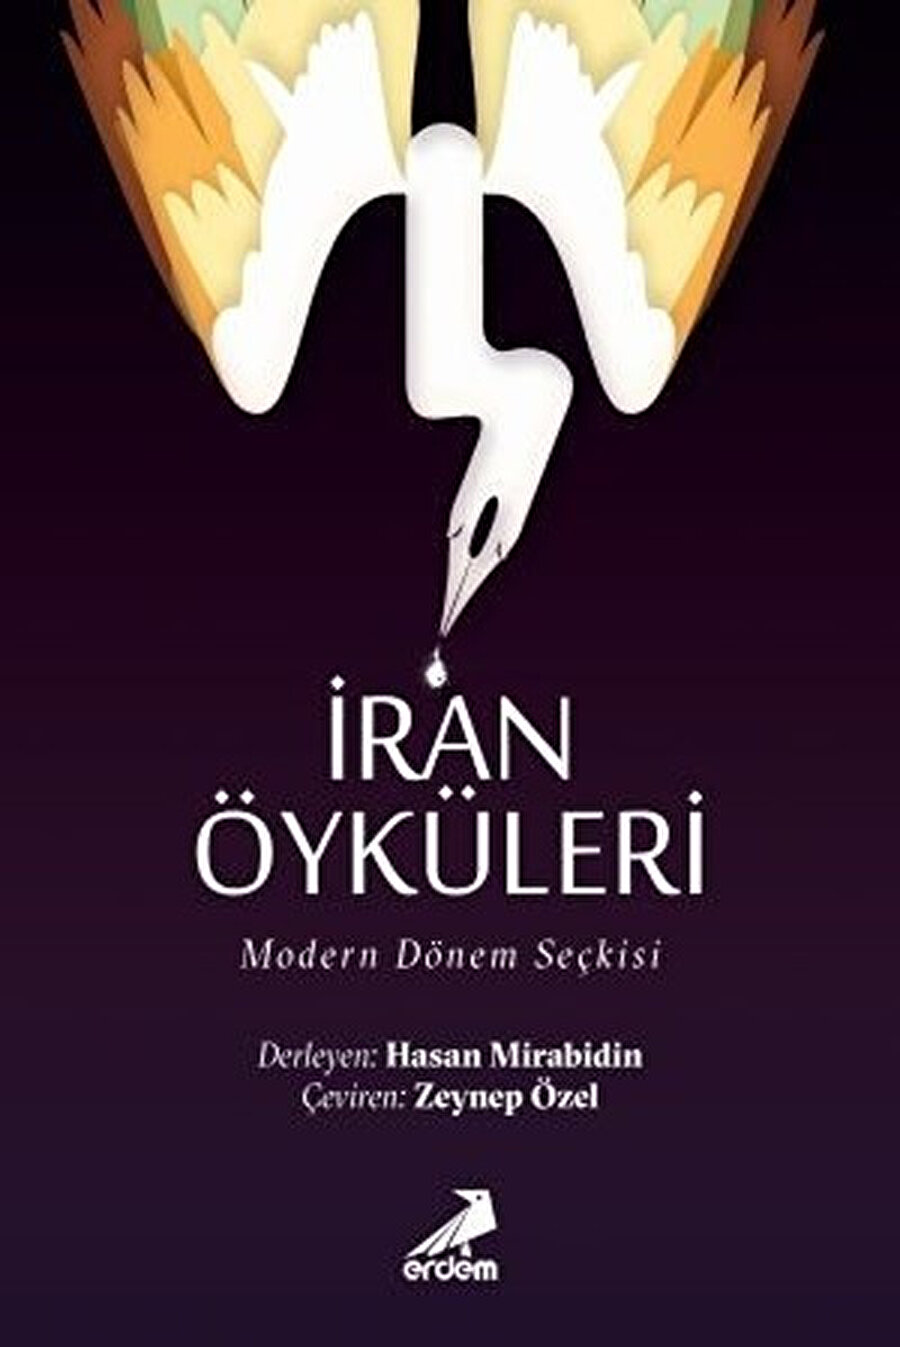 İran Öyküleri: Modern Dönem Seçkisi, Hasan Mirabidin, çev. Zeynep Özel, Erdem Yayınlar